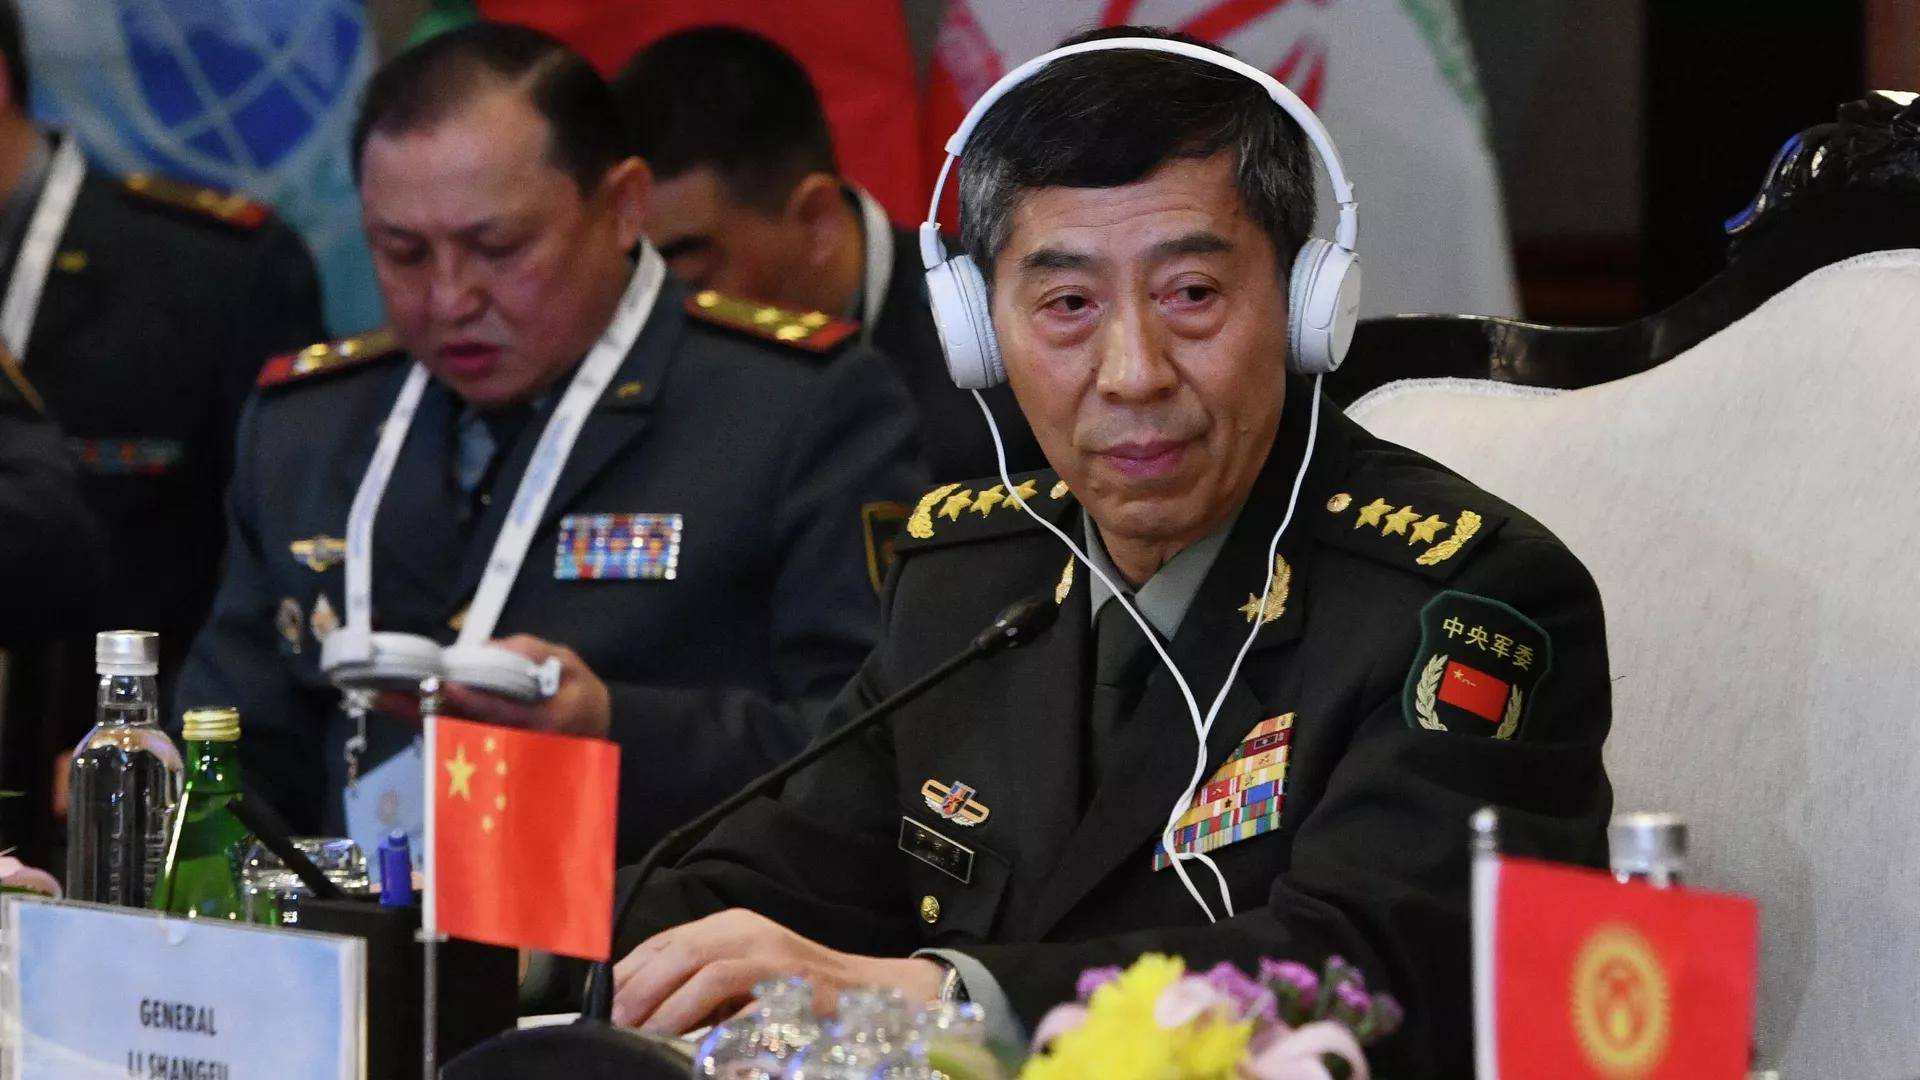 中国国防部长李尚福将出席第20届香格里拉对话会并访问新加坡 - 2023年5月29日, 俄罗斯卫星通讯社